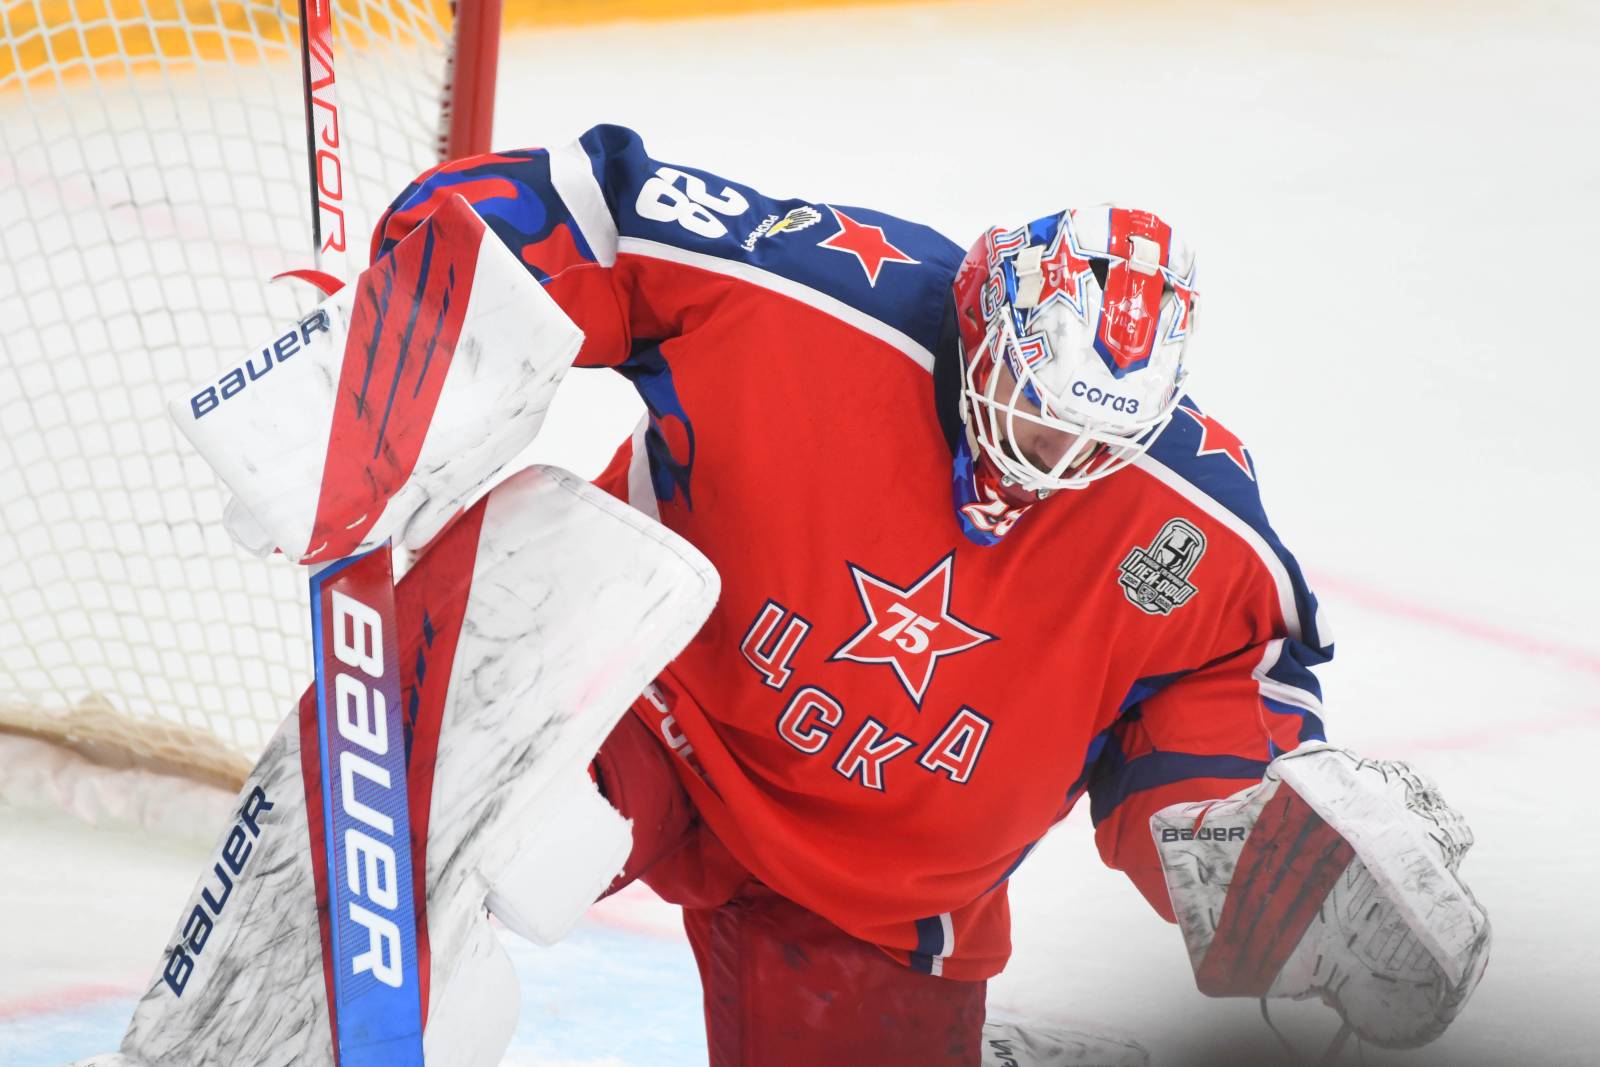 Федотов высказался о курьёзной ситуации в дебютном матче в НХЛ, когда он перепутал ворота